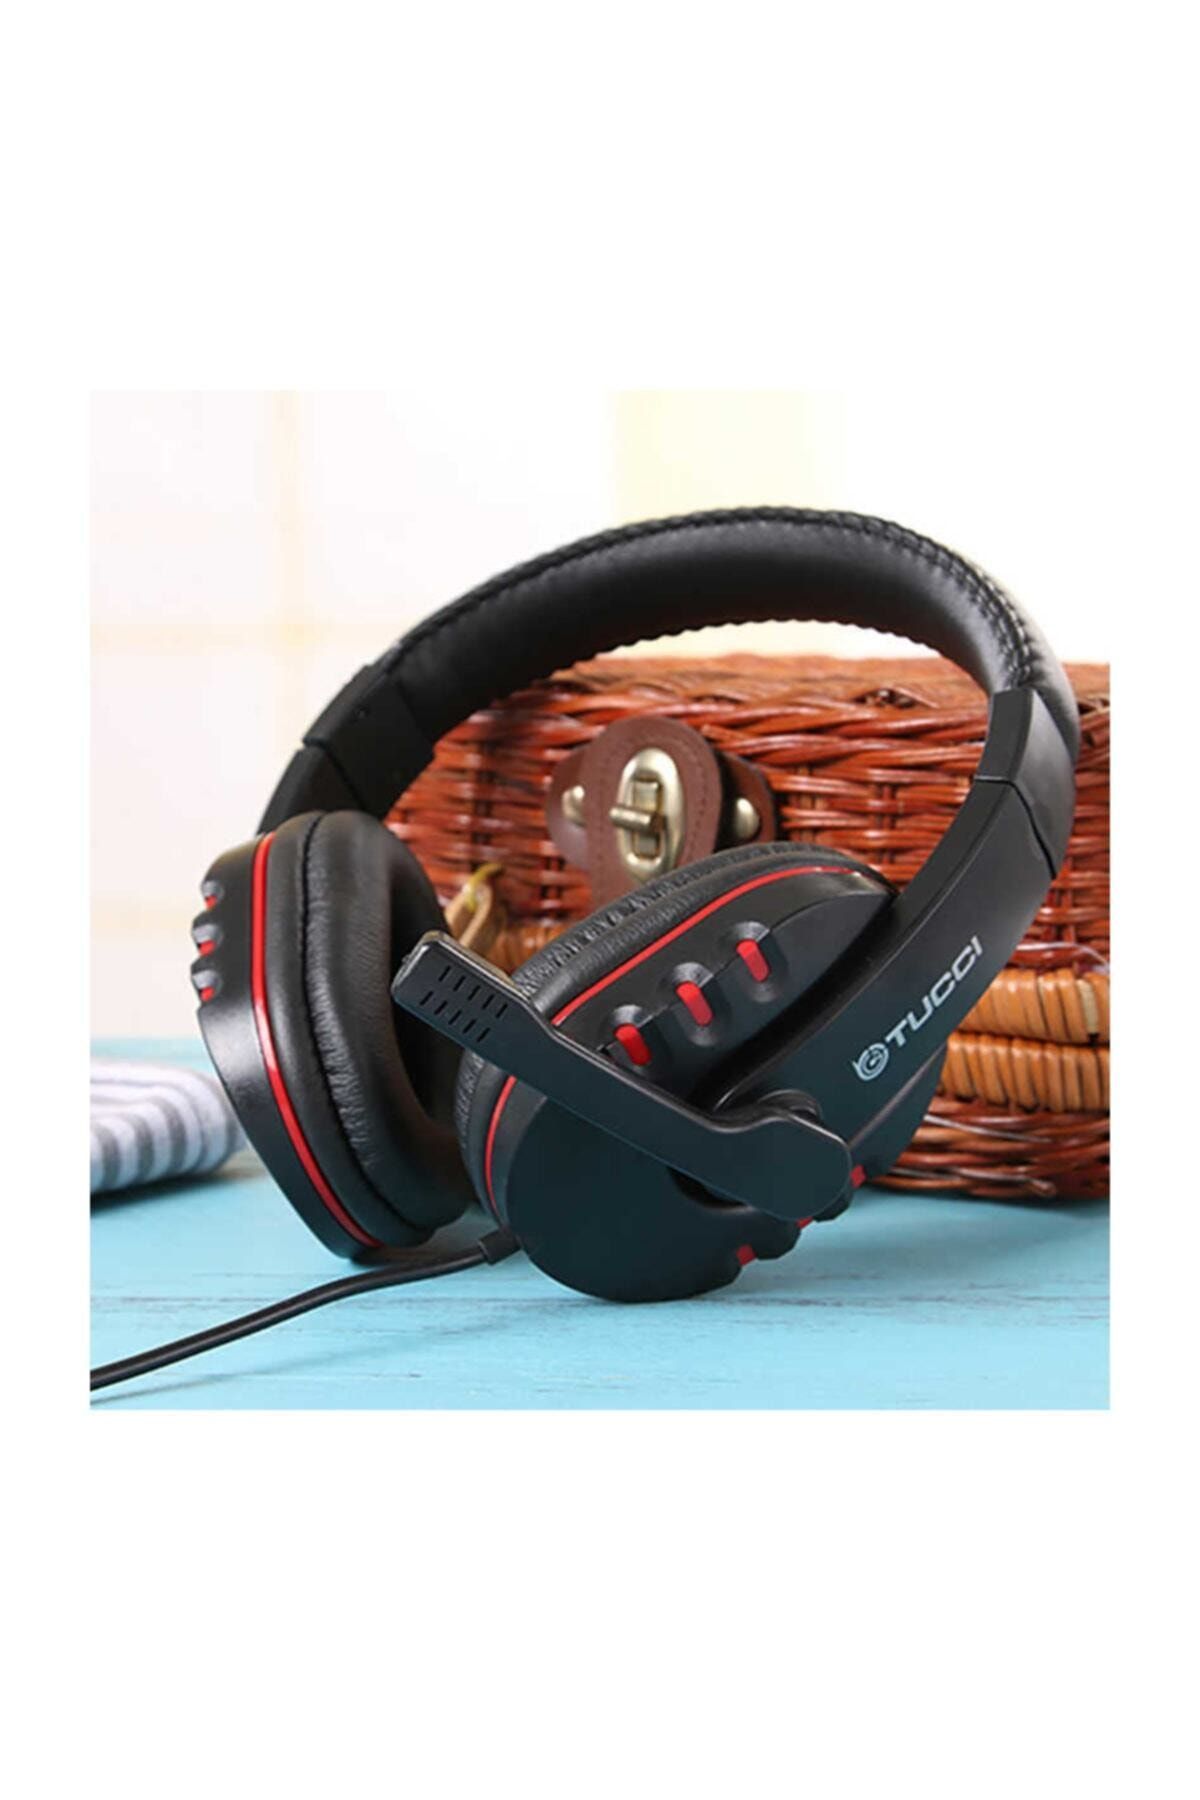 teknosepetim Oyuncu Kulaklık X6 Mikrofonlu Kulaküstü Gaming Prof Pubg Oyun Kulaklık Eba Yumuşak Ped